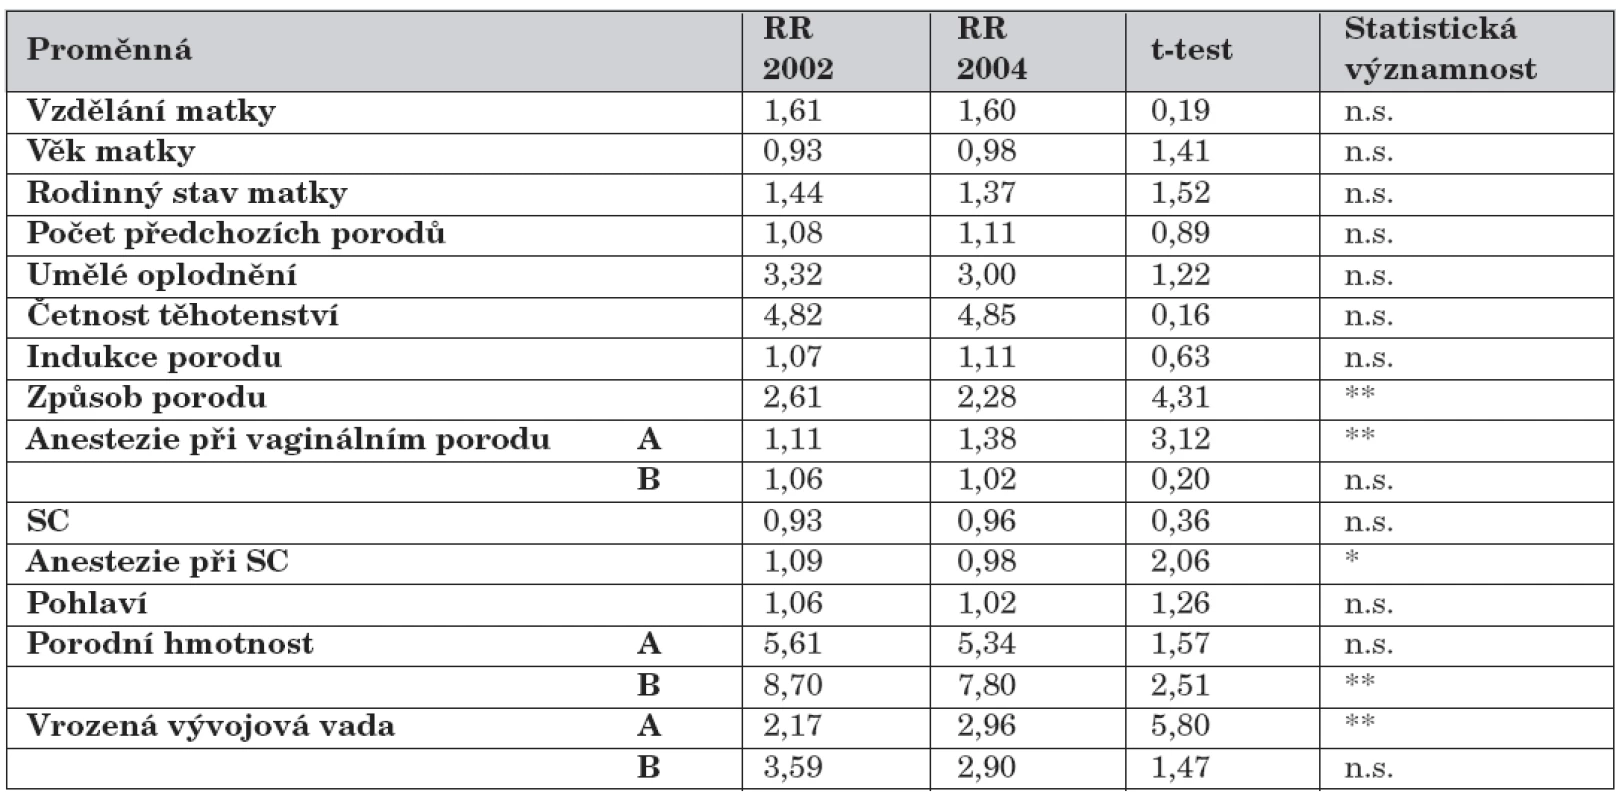 Novorozenci podle způsobu výživy a rizikových faktorů, t-test (porovnání RR let 2002 a 2004).